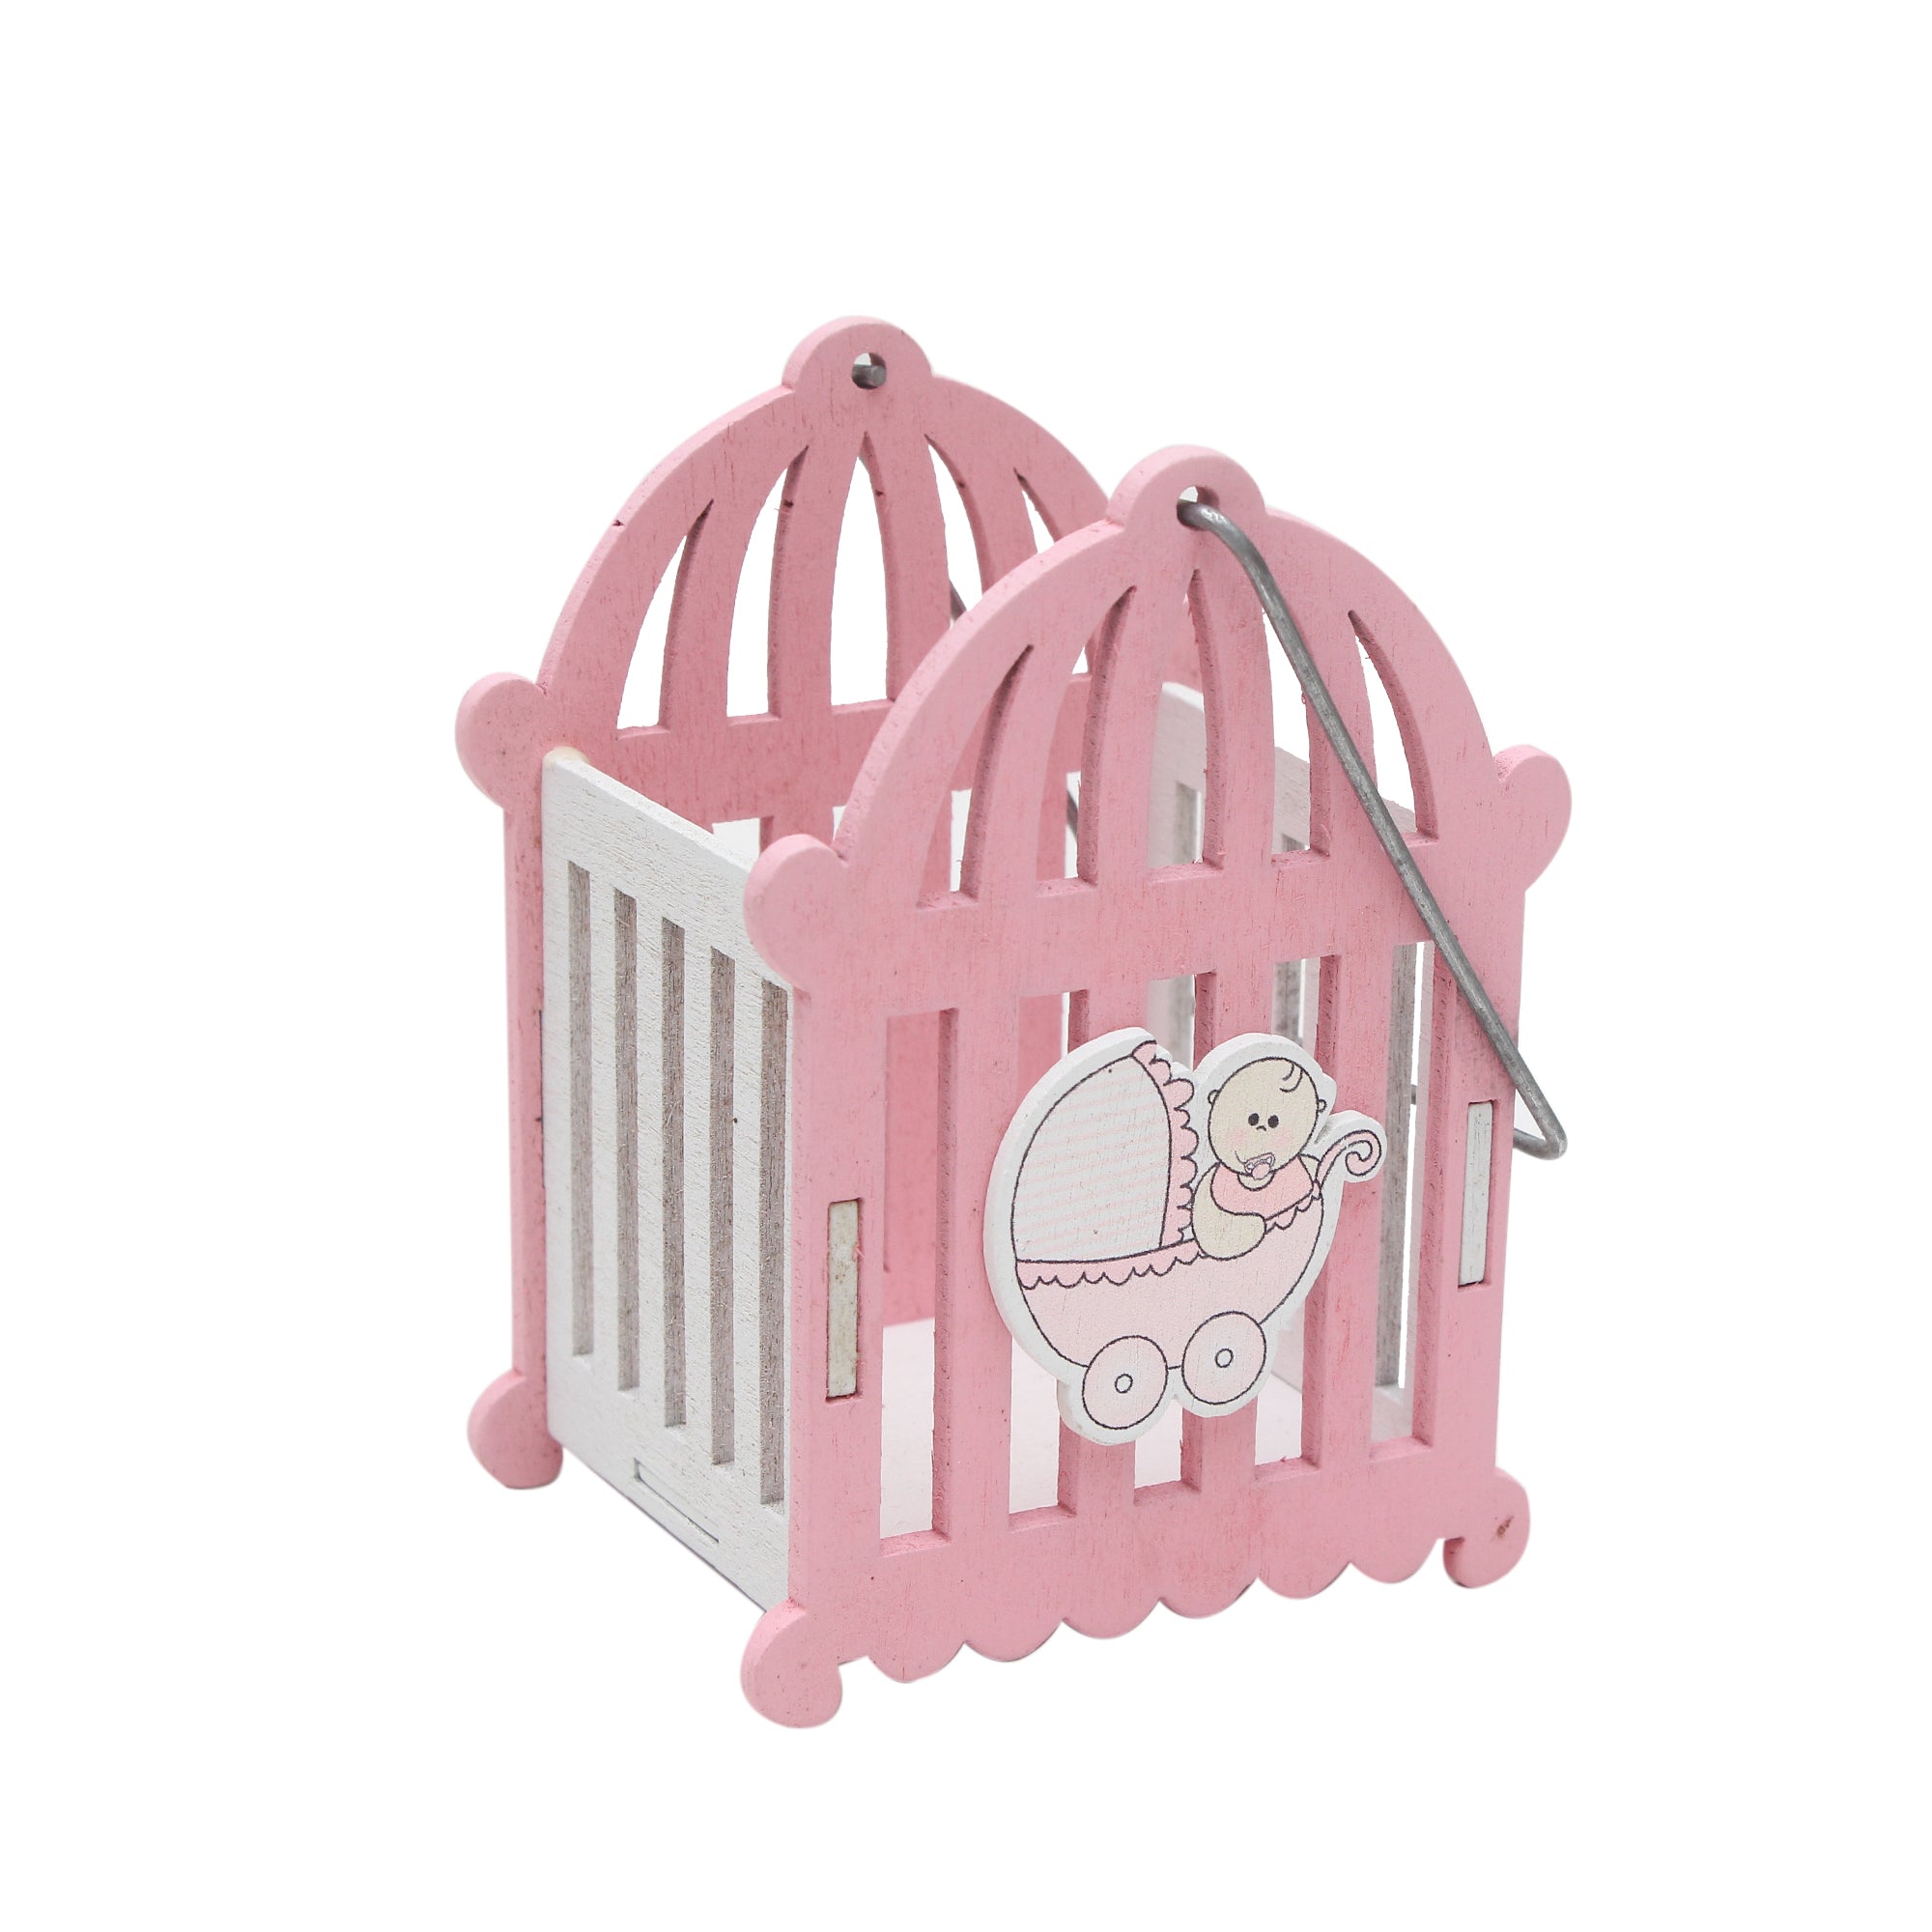 Little Birdie Wooden Cradle - Pink